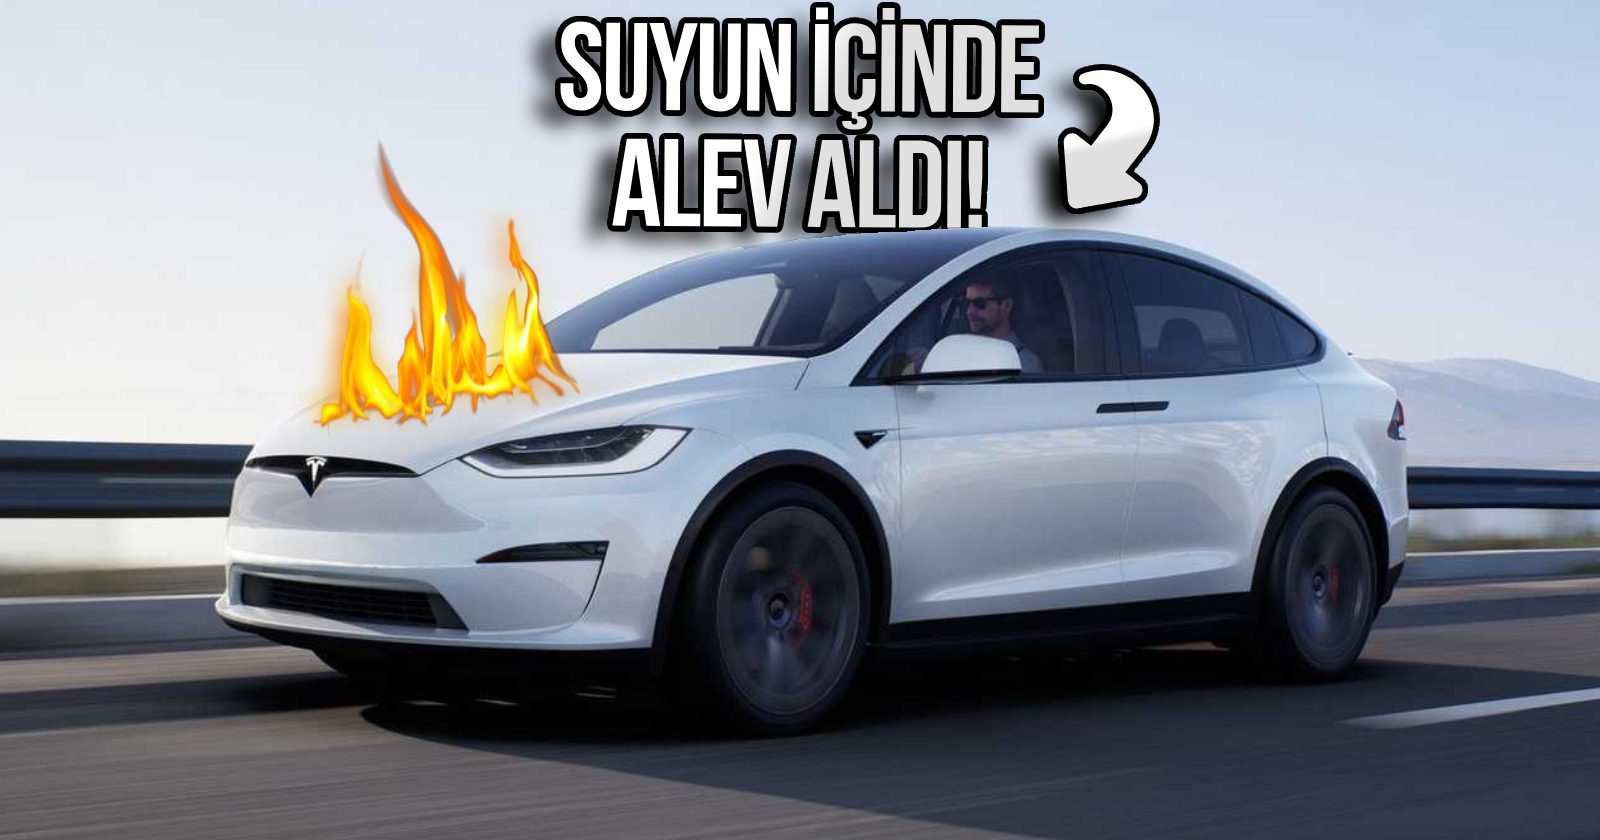 Çok konuşuldu: Tesla, suyun altındayken yanmaya başladı! (Video)